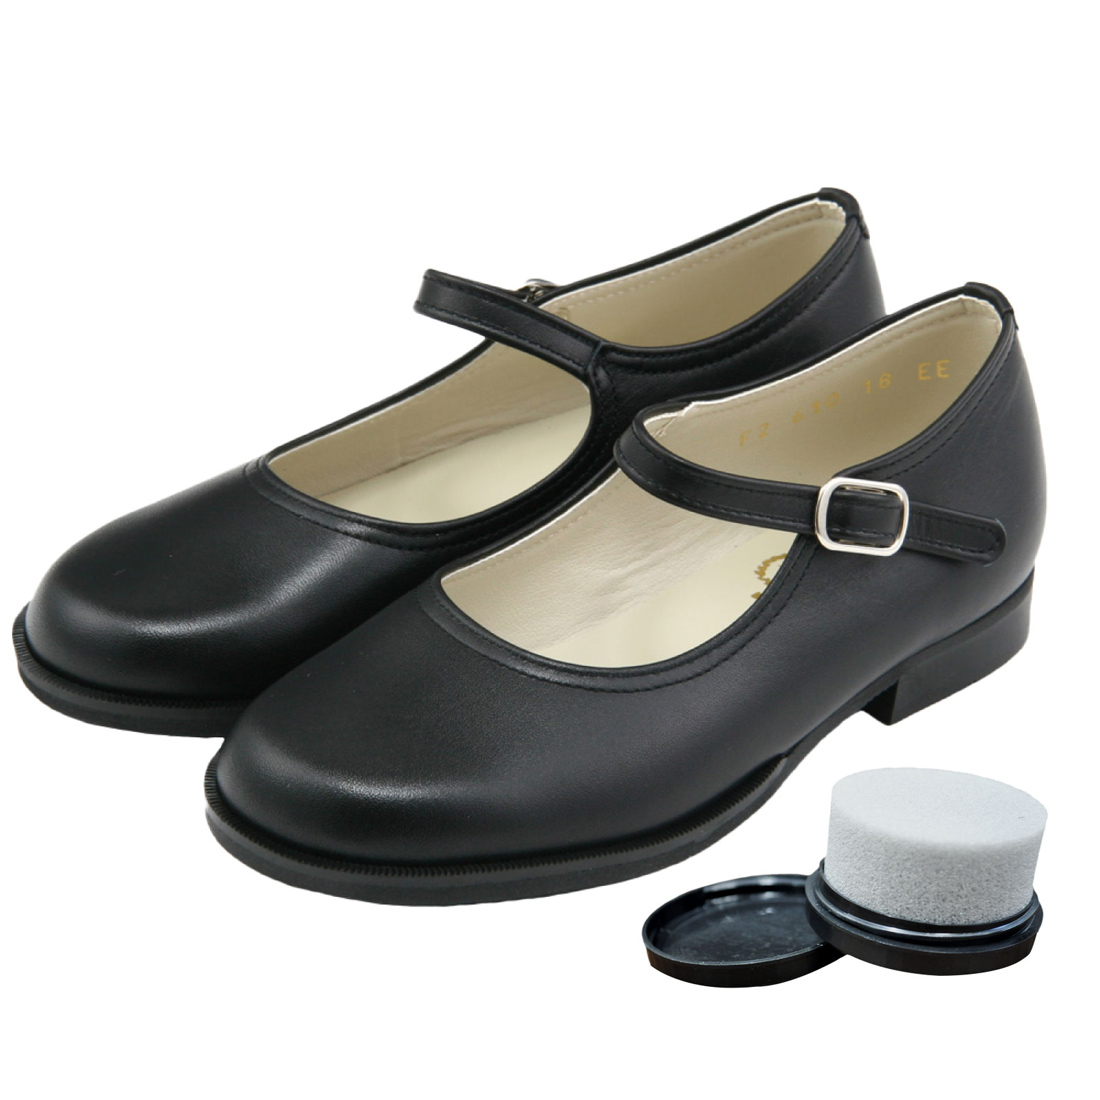 靴磨き付き KID CORE キッドコア 2E 日本製本革 ソフトタイプ ワンストラップフォーマルシューズ 靴ズレしにくい靴 2E ブラック  21.5cm～26.0cm 1～3営業日以内に発送となります。 kc610